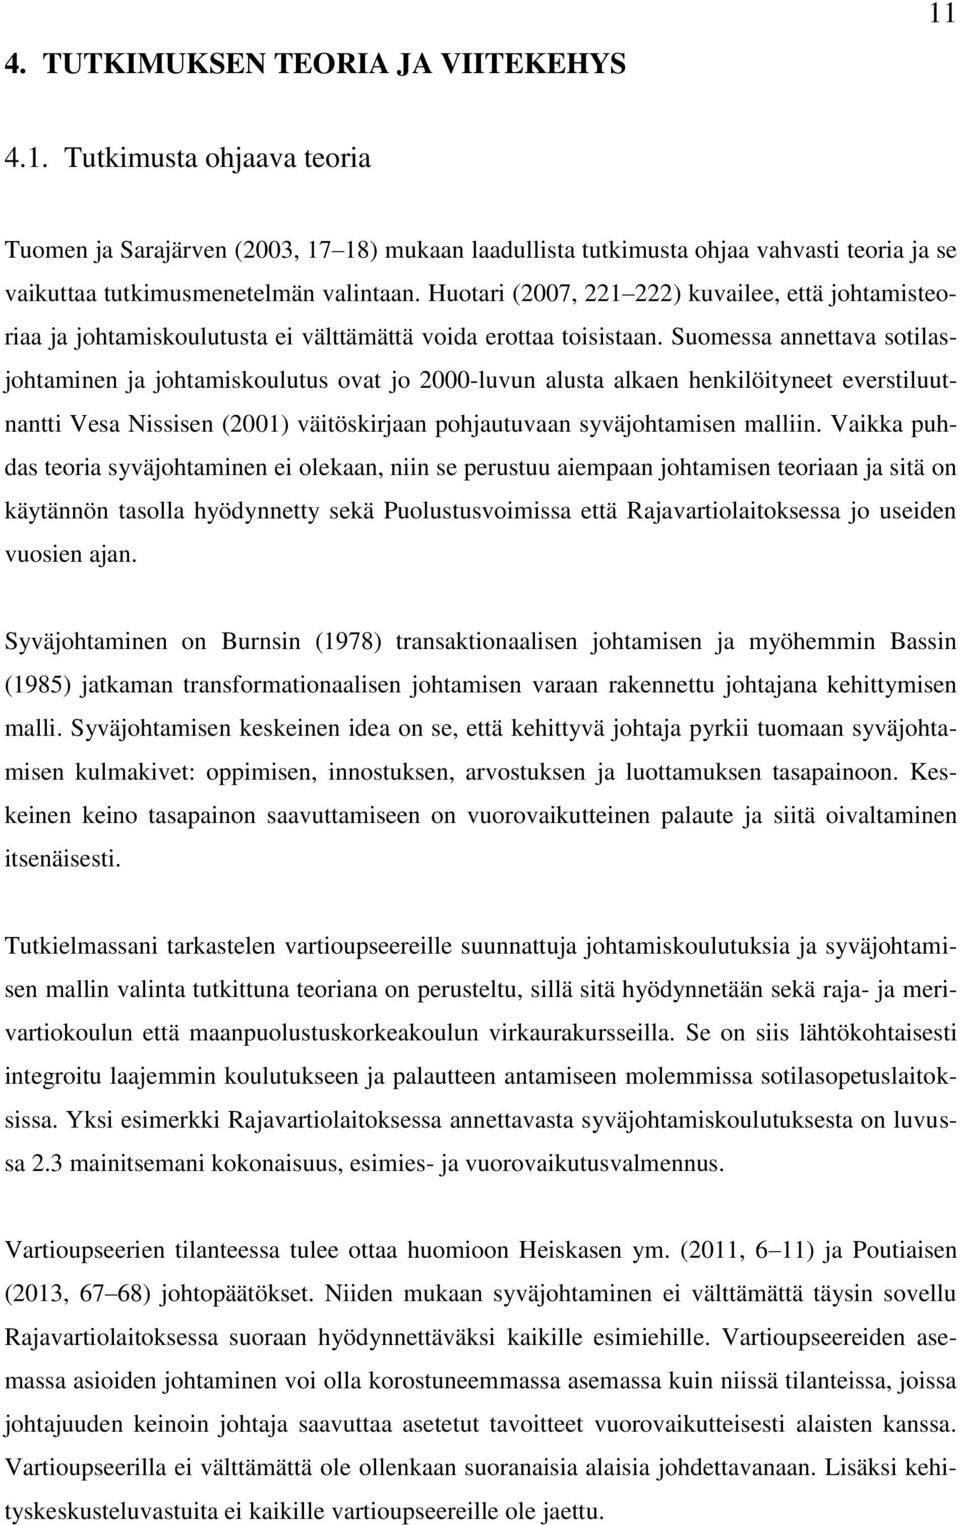 Suomessa annettava sotilasjohtaminen ja johtamiskoulutus ovat jo 2000-luvun alusta alkaen henkilöityneet everstiluutnantti Vesa Nissisen (2001) väitöskirjaan pohjautuvaan syväjohtamisen malliin.